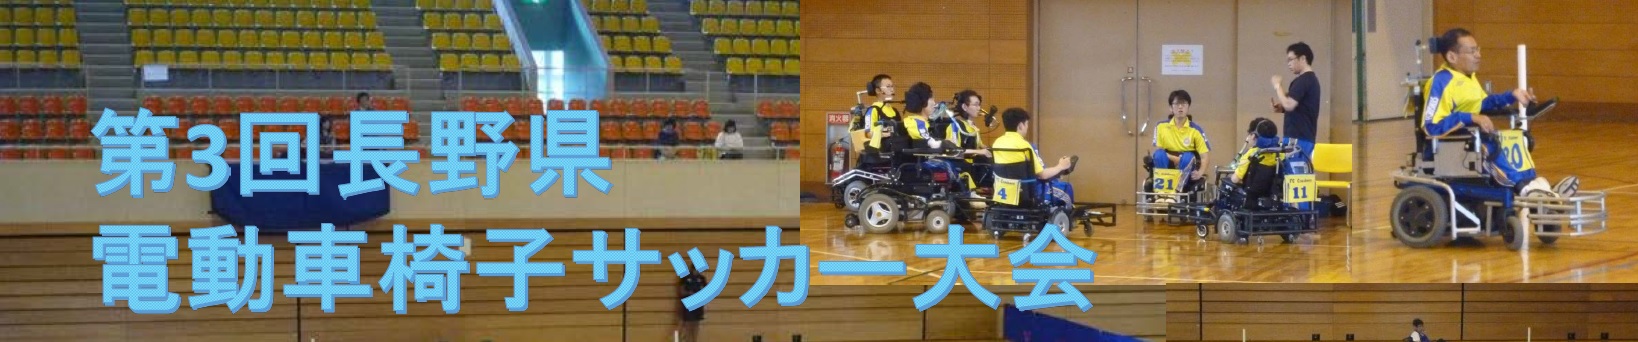 第3回 長野県電動車椅子サッカー大会 開催のお知らせ